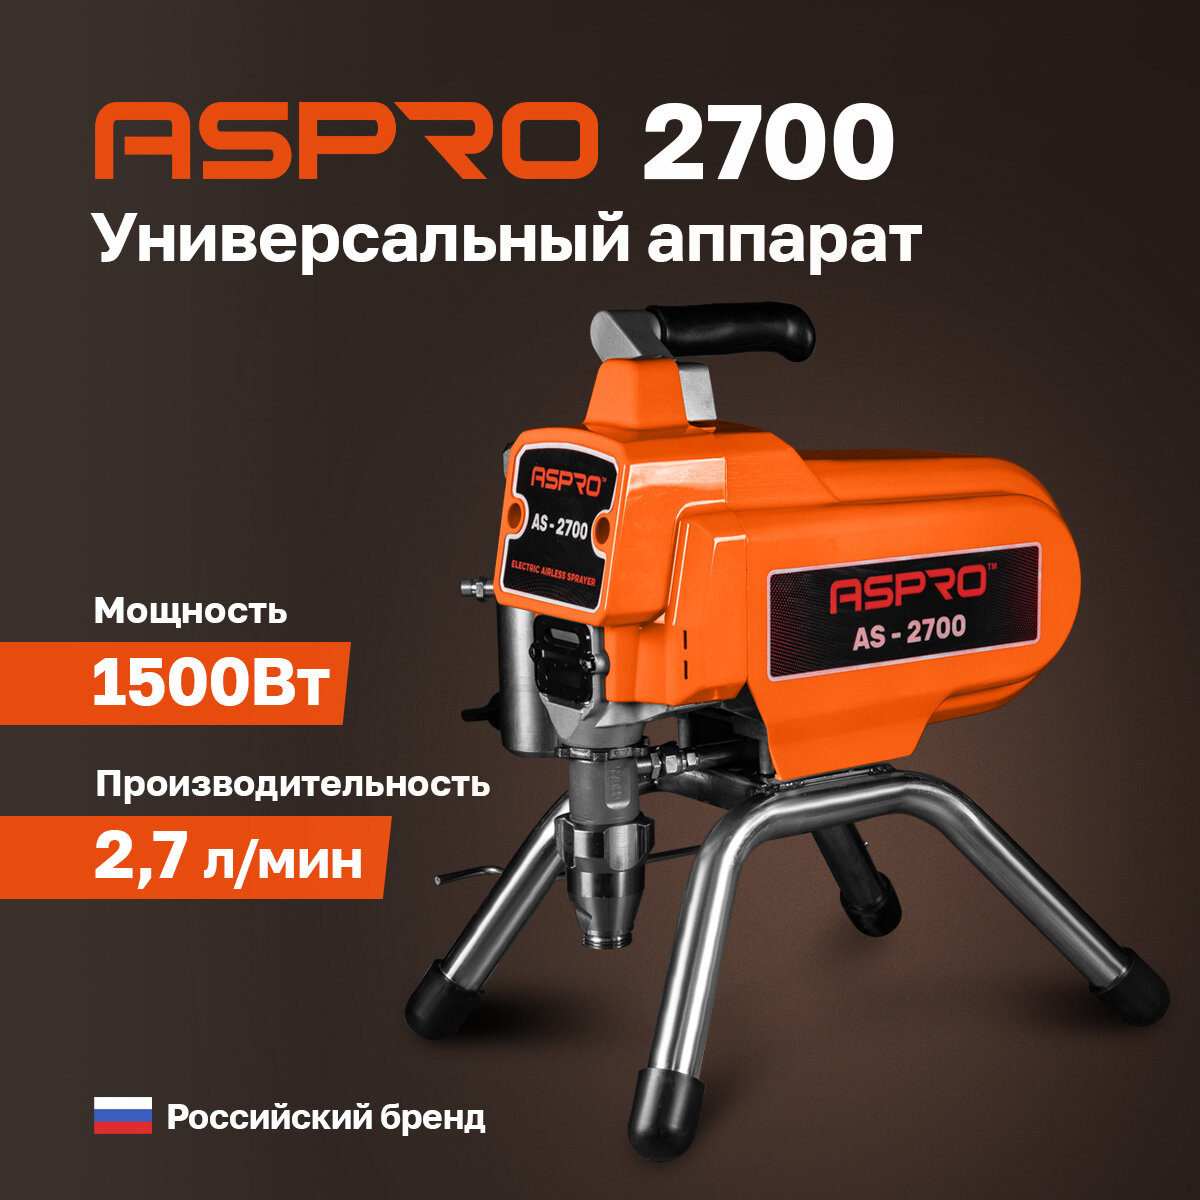 Окрасочный аппарат ASPRO-2700